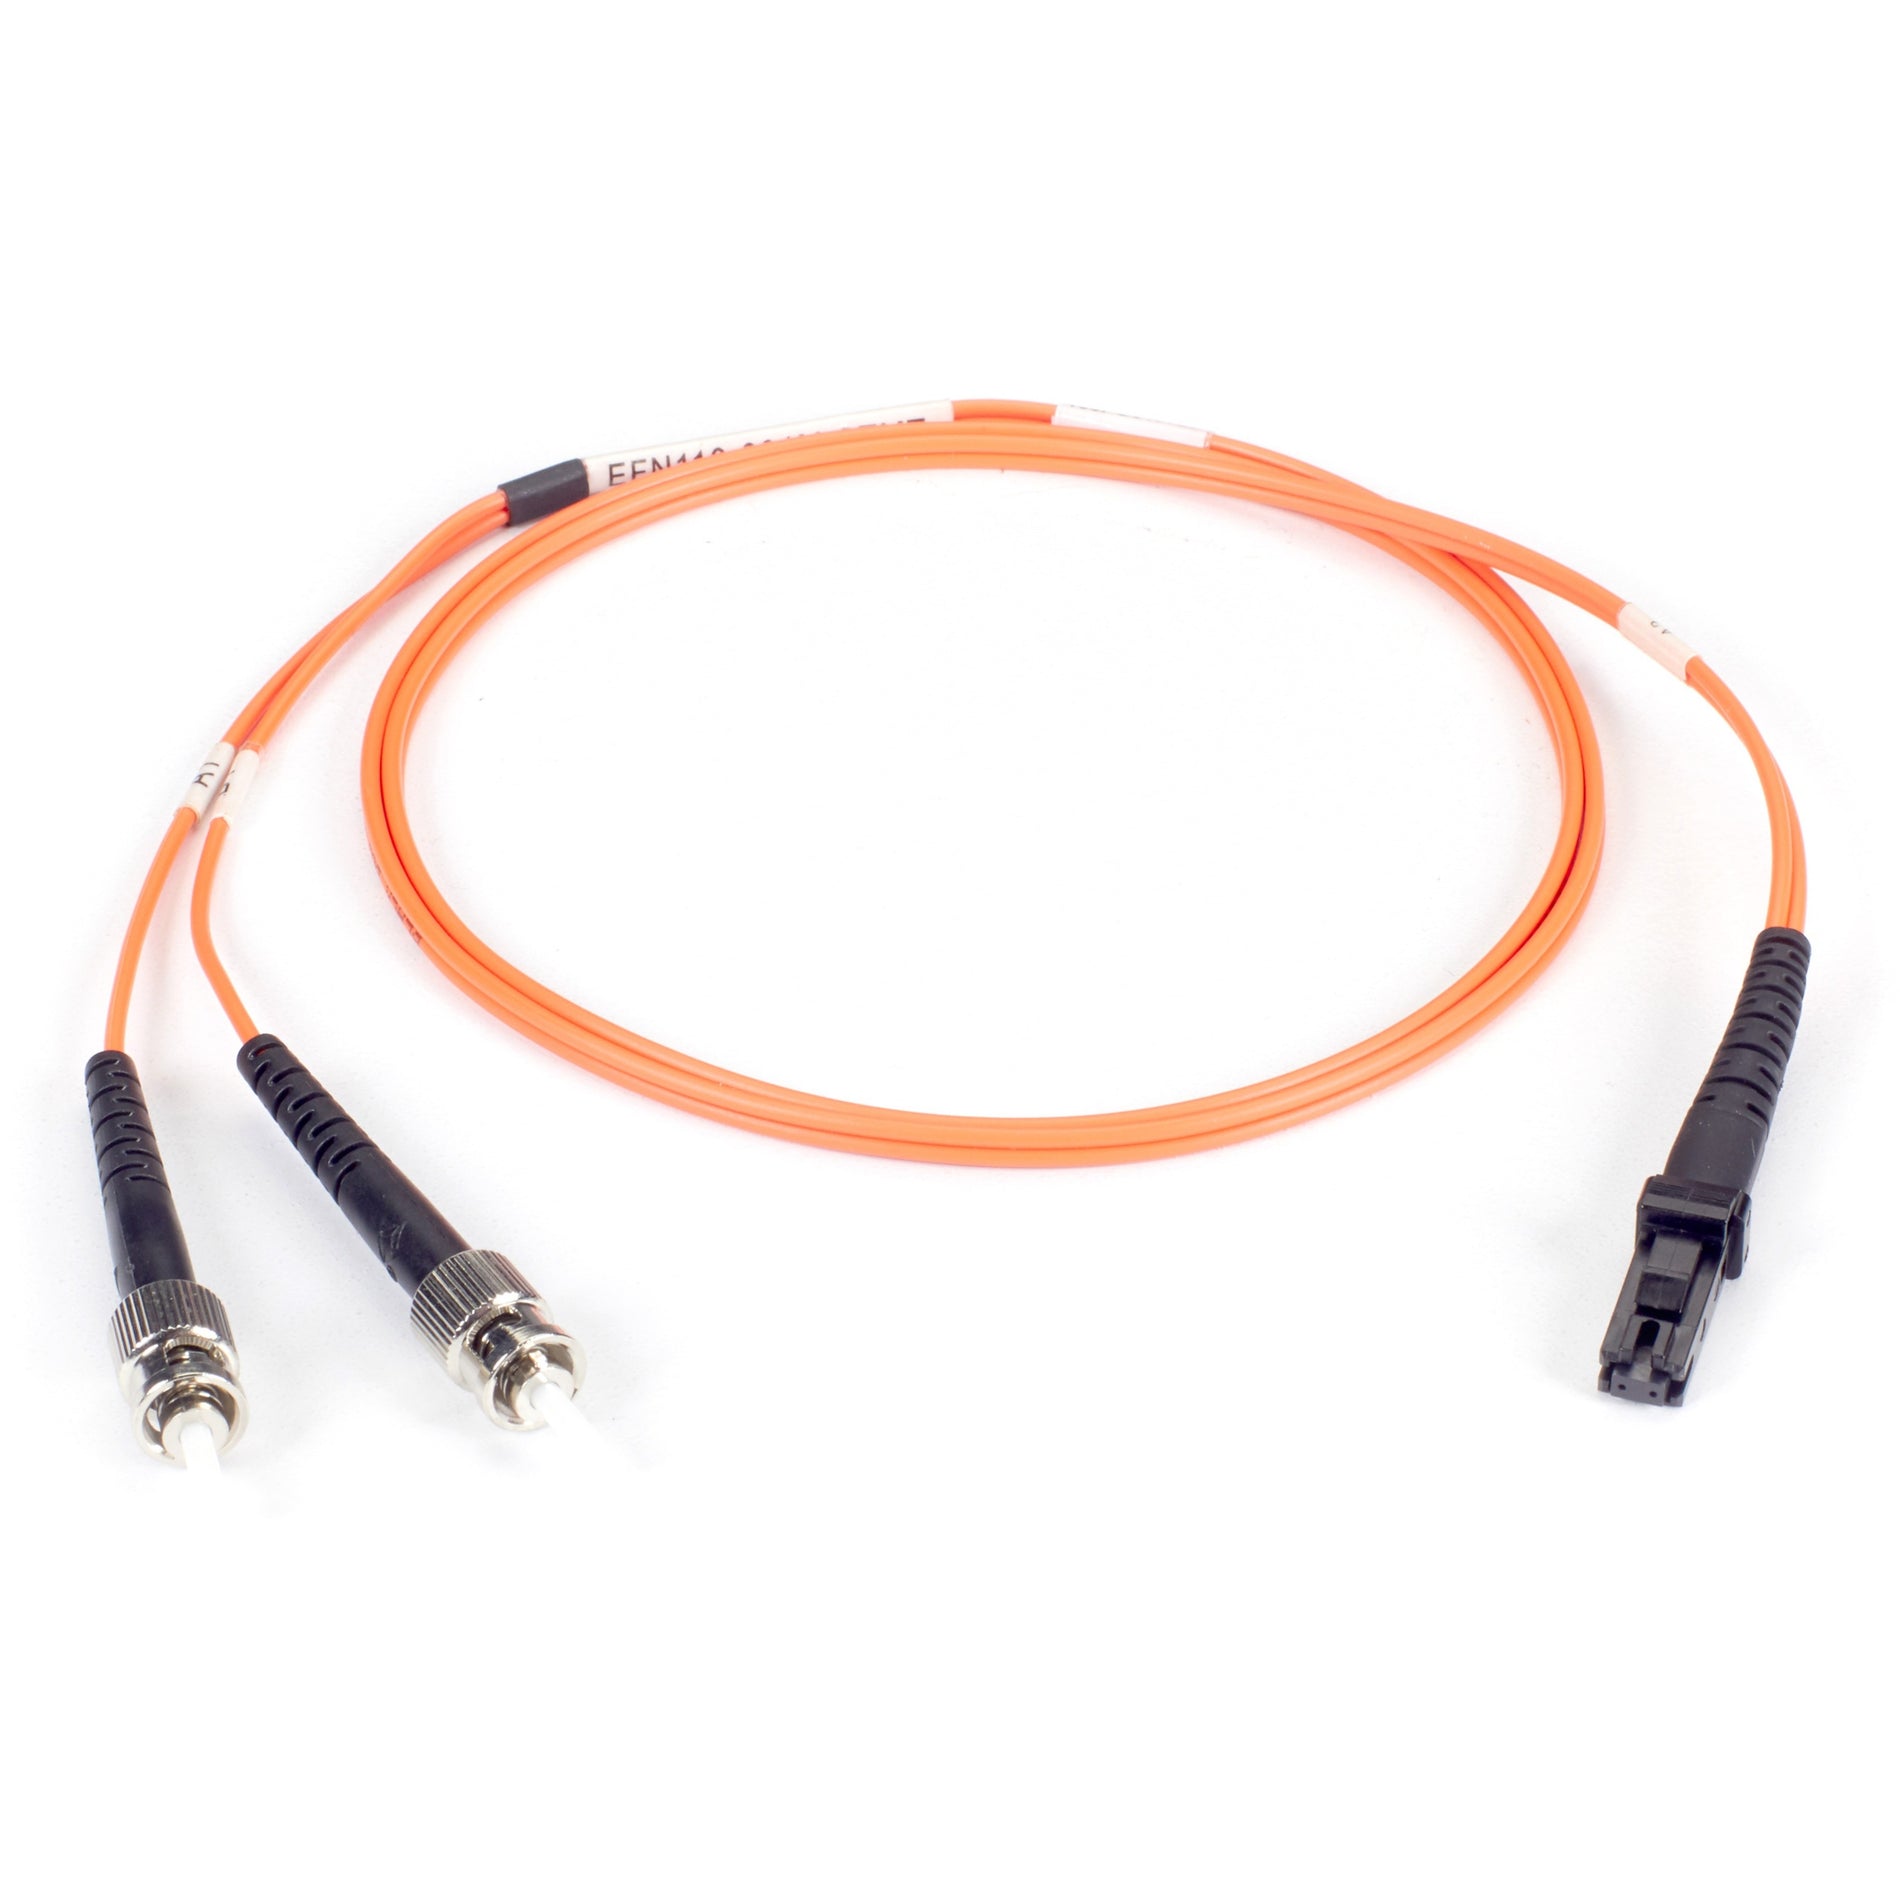 Black Box EFN110-030M-STLC Fiber Optic Duplex Patch Network Cable, Multi-mode, 98.40 ft, ST to LC Male Connectors, Orange Jacket